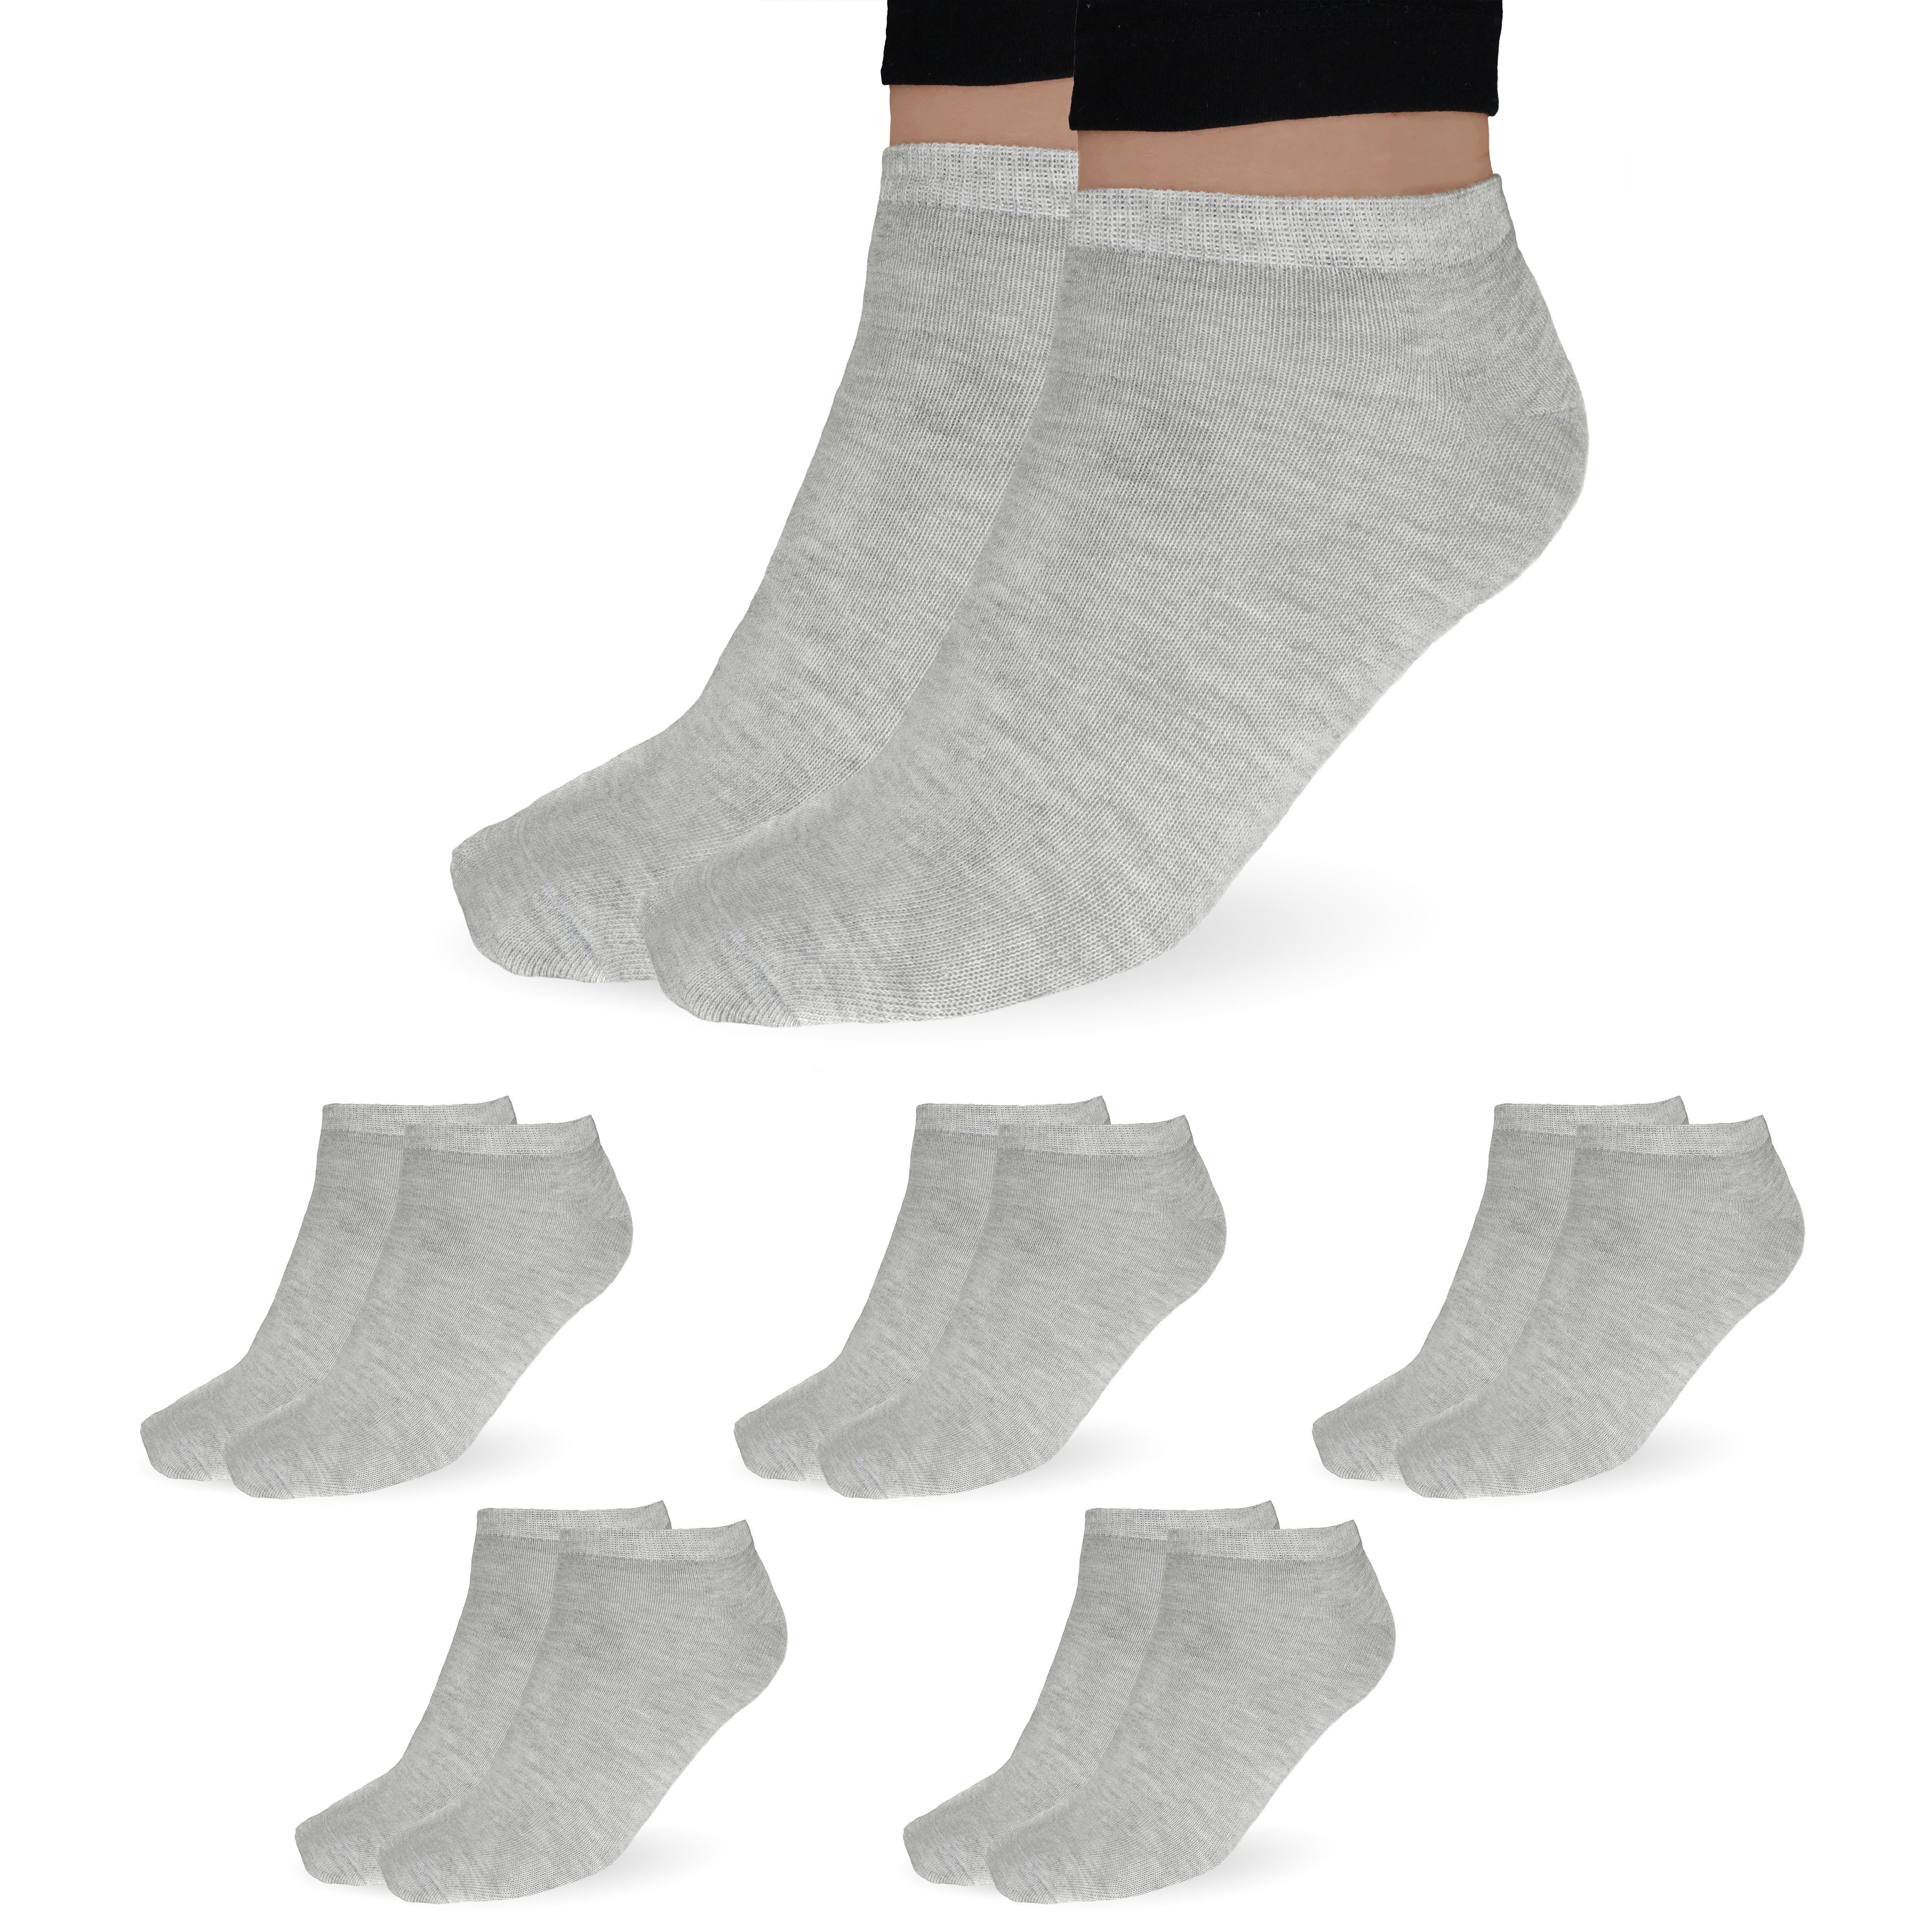 SO.I Freizeitsocken Sneaker Socken Damen & Herren aus Baumwolle (Größen 35-46, 5-20 Paar) atmungsaktive Unisex Socken 5x Grau